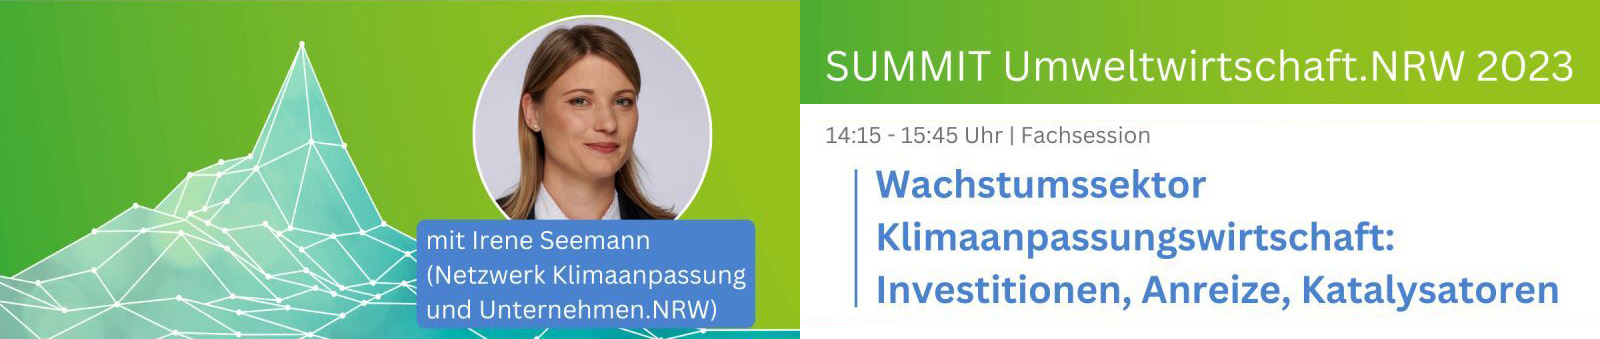 SUMMIT Umweltwirtschaft.NRW 2023 - Auf dem Sprung in die Green Economy